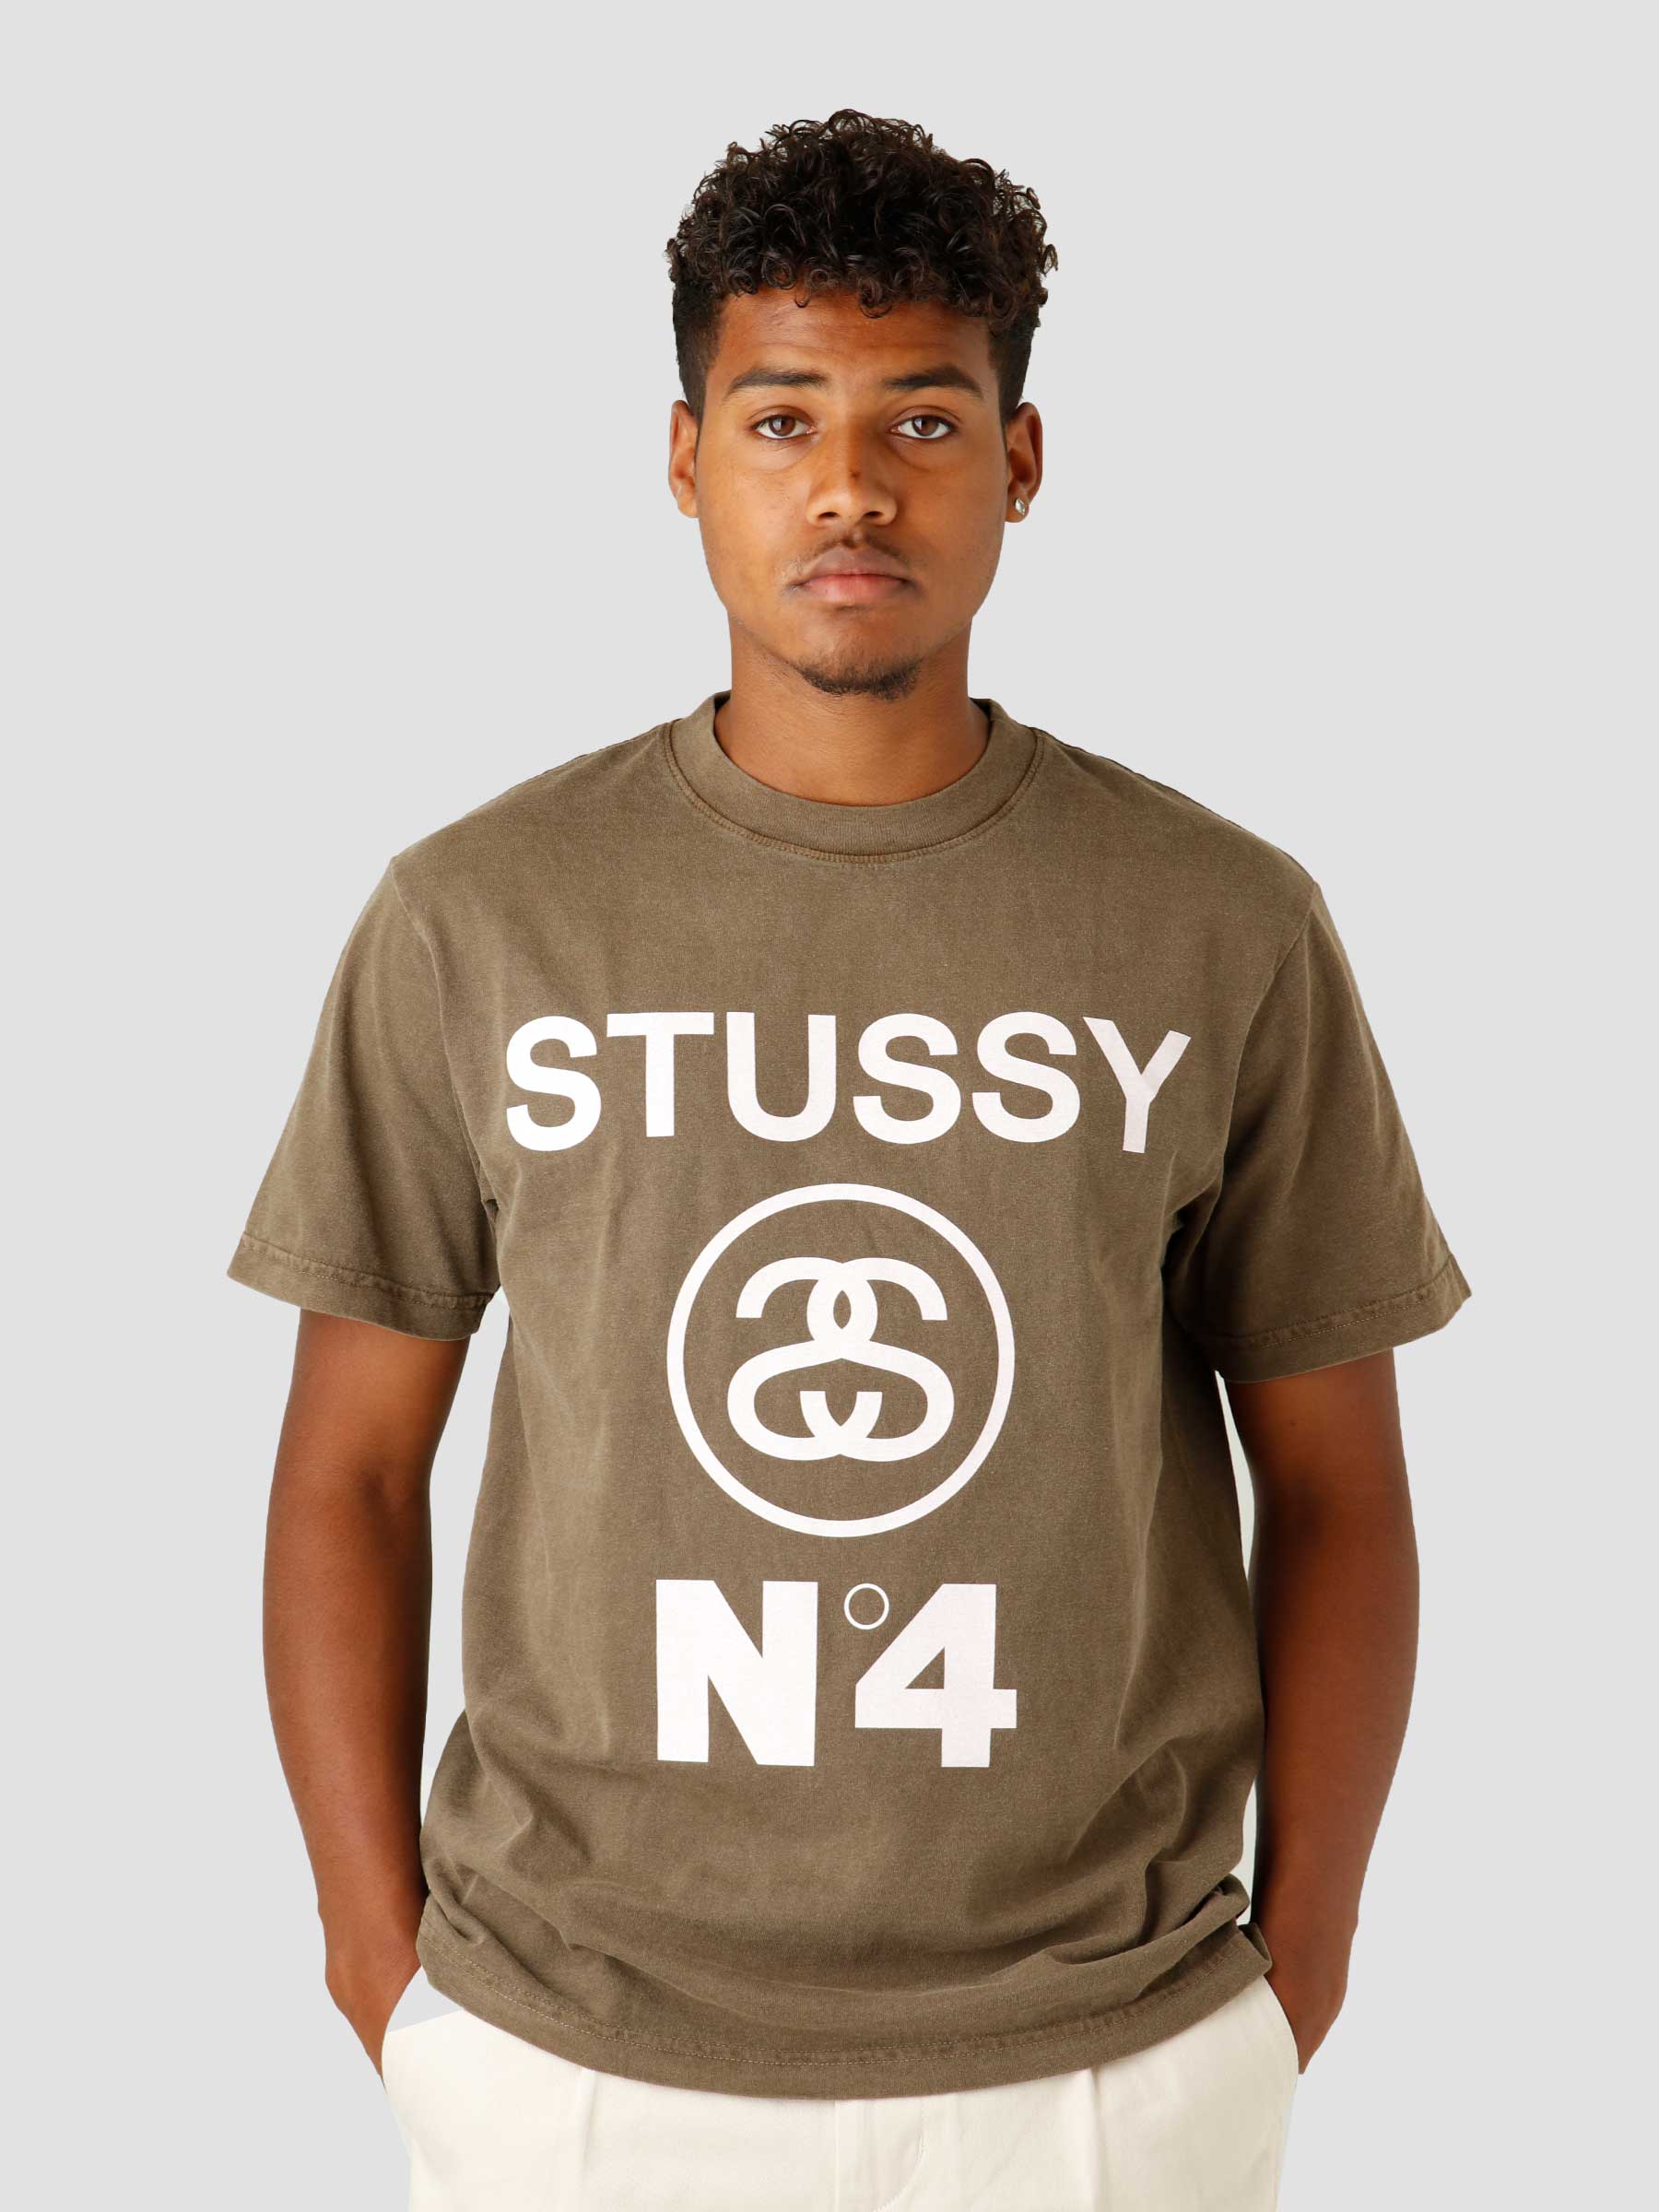 madlavning Bekendtgørelse prop Stussy Stussy No.4 Pig. Dyed T-shirt Coffee 1904804 | Freshcotton